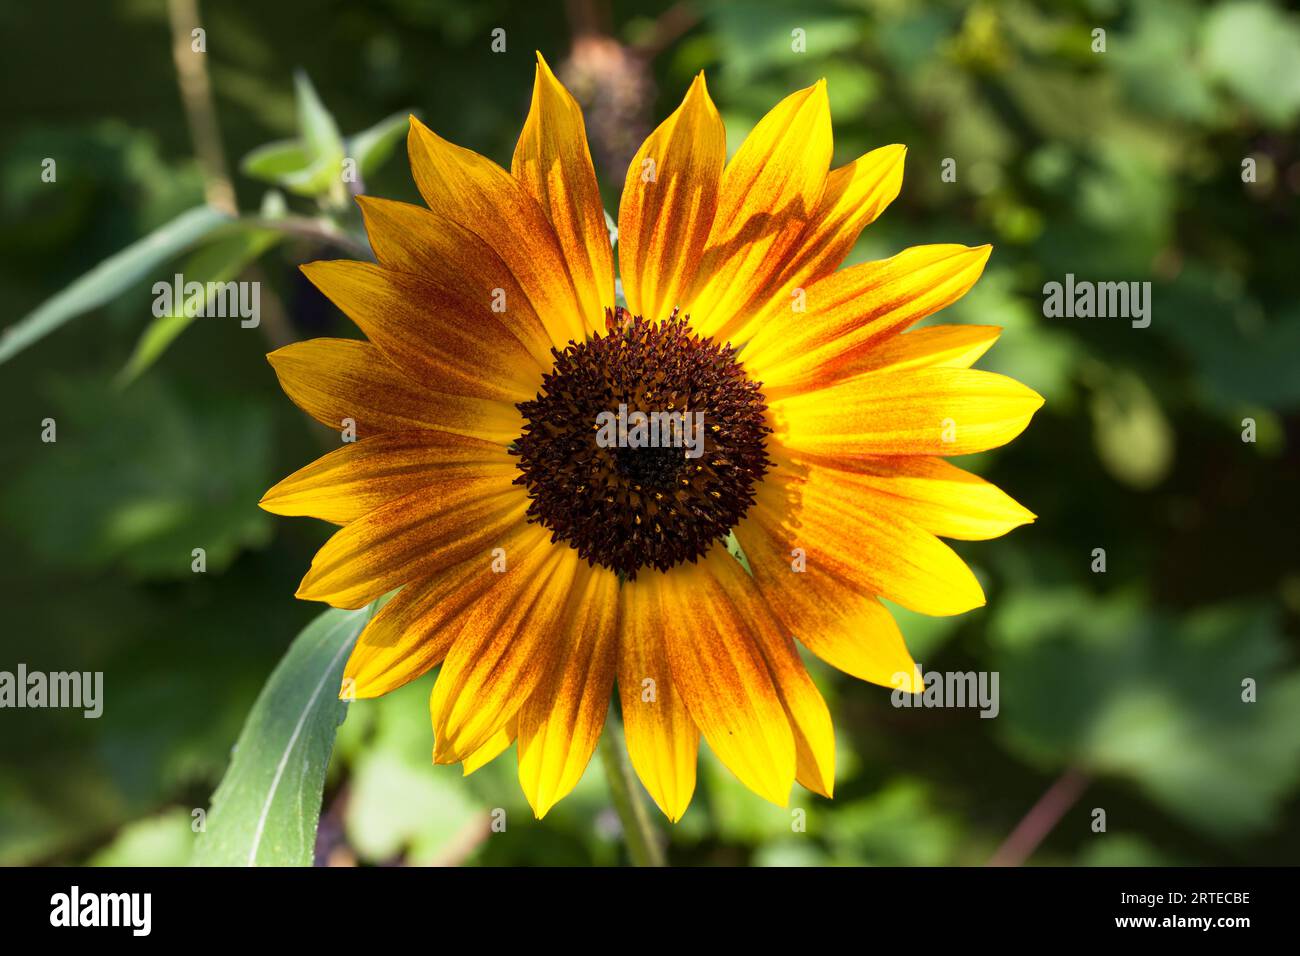 Kleiner, gelber und oranger Sonnenblumenkopf, der im grünen englischen Garten wächst. Stockfoto